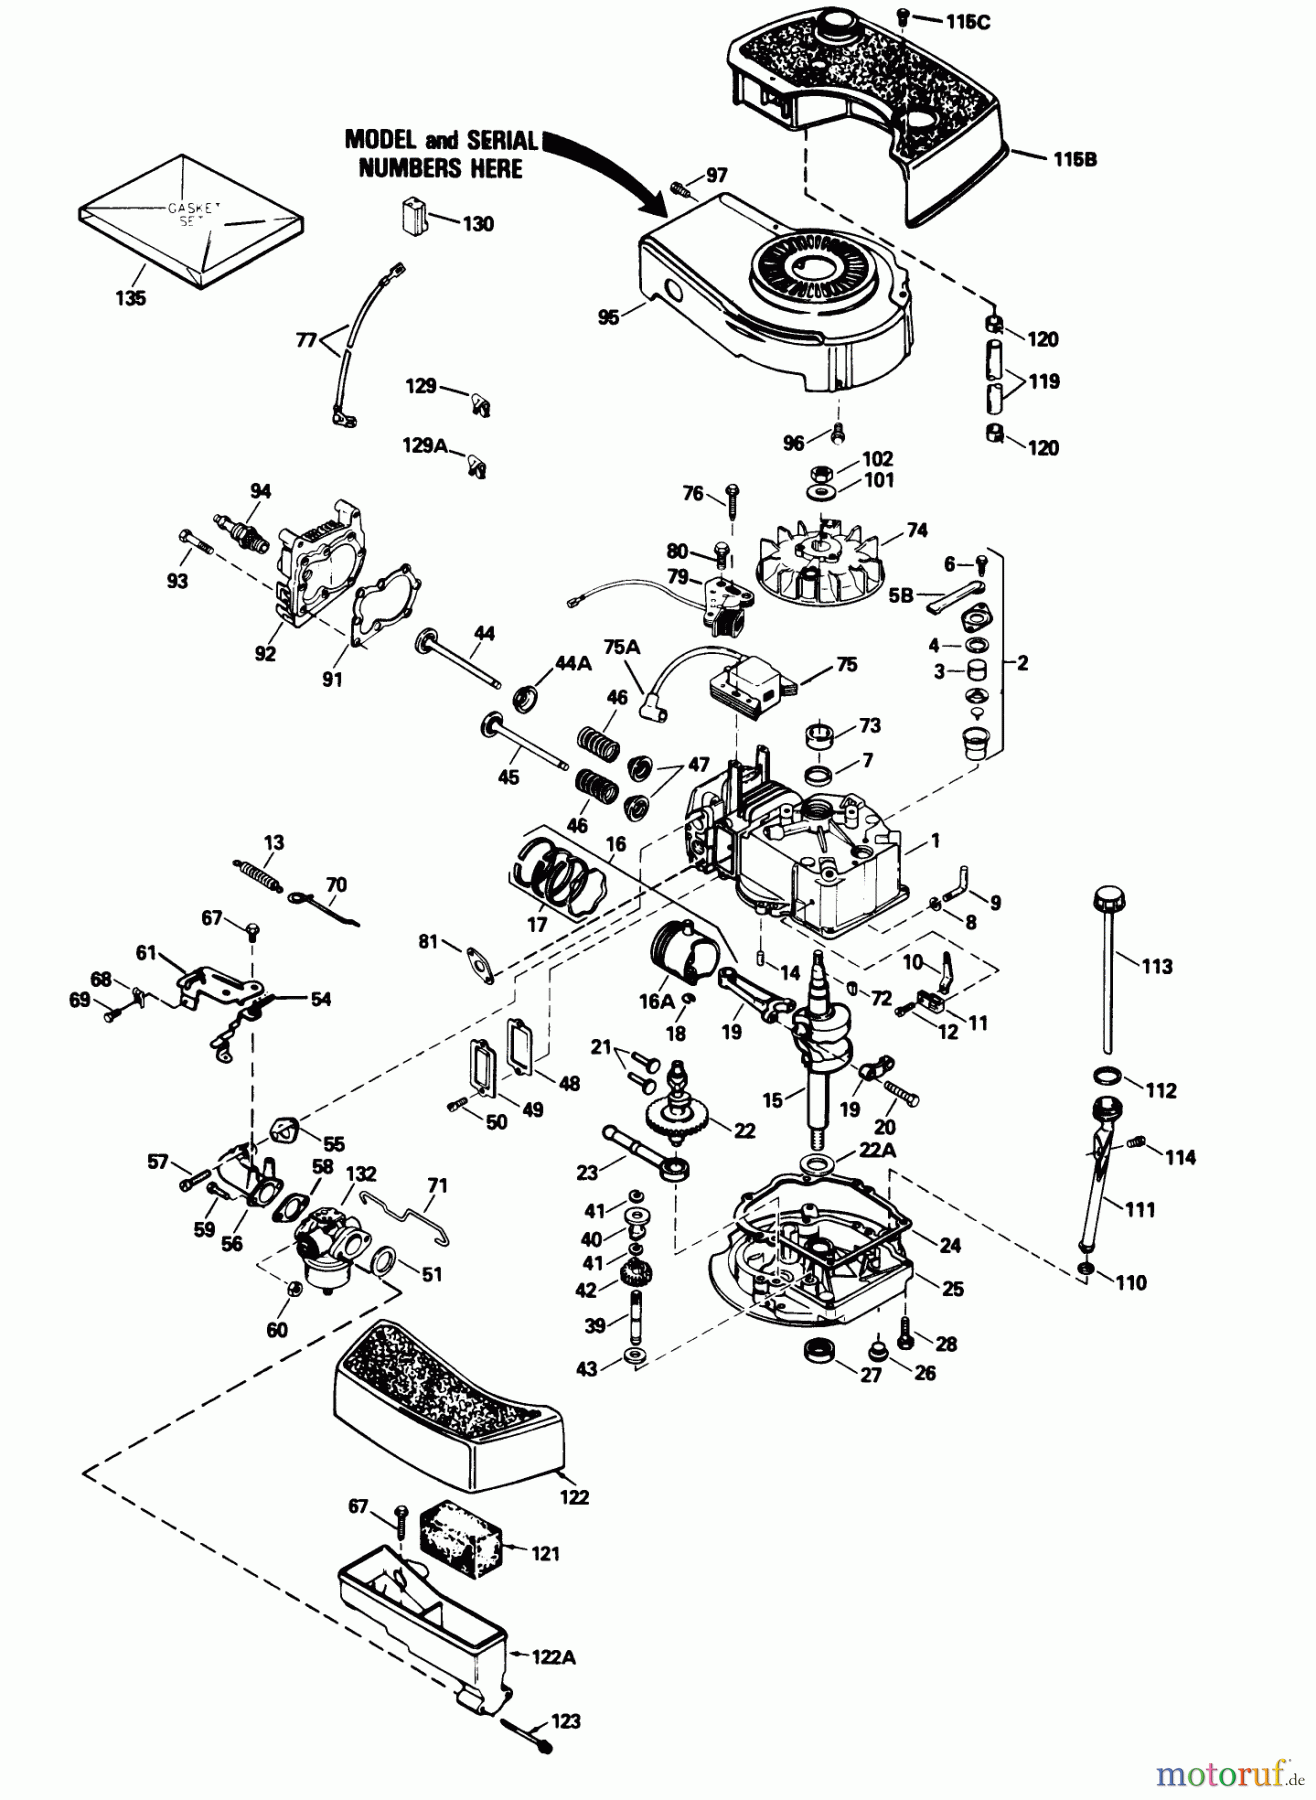  Toro Neu Mowers, Walk-Behind Seite 1 20677 - Toro Lawnmower, 1990 (0002102-0999999) ENGINE MODEL NO. TNT 100-10104F